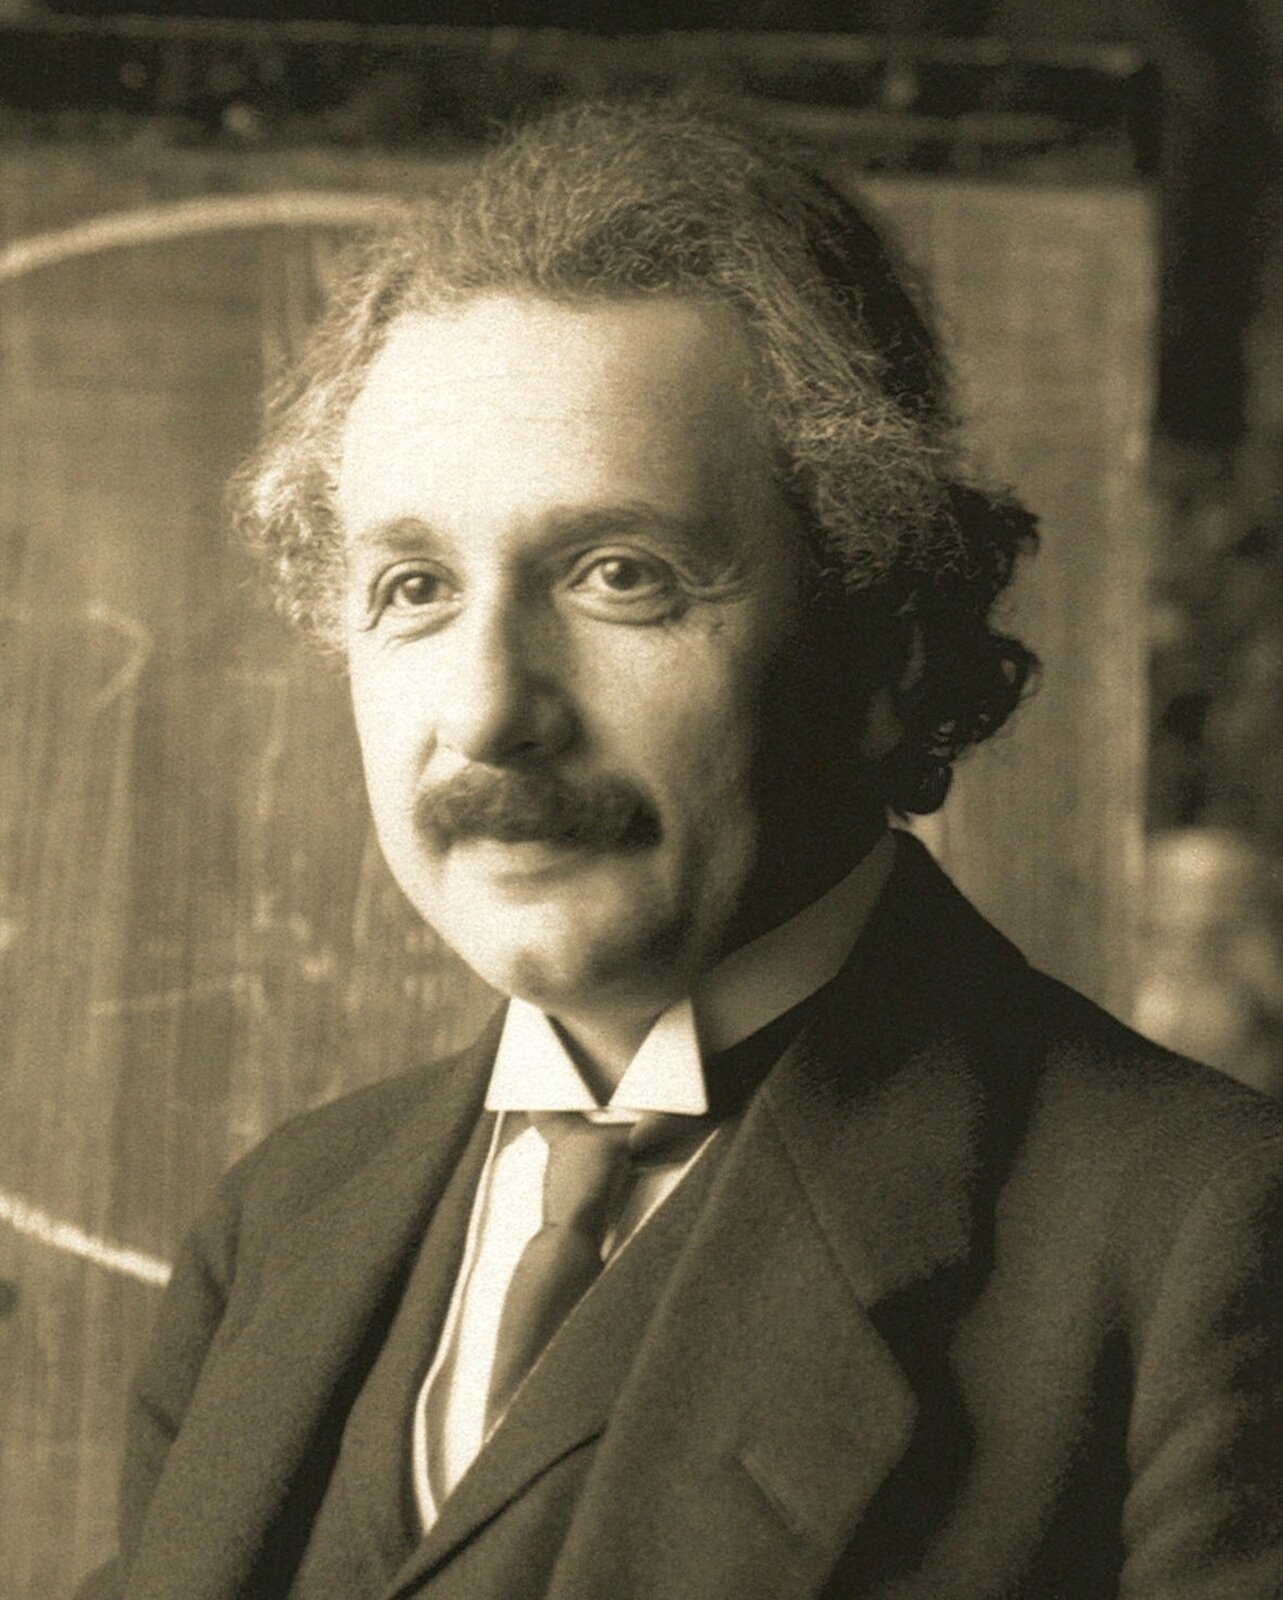 Rys. 3. Zdjęcie poglądowe przedstawia portret Alberta Einsteina. To uśmiechnięty mężczyzna w średnim wieku z bujną fryzurą w lekkim nieładzie, z wąsem. Jest elegancko ubrany w marynarkę, kamizelkę, białą koszulę i krawat. Zdjęcie jest monochromatyczne w kolorze sepii. 